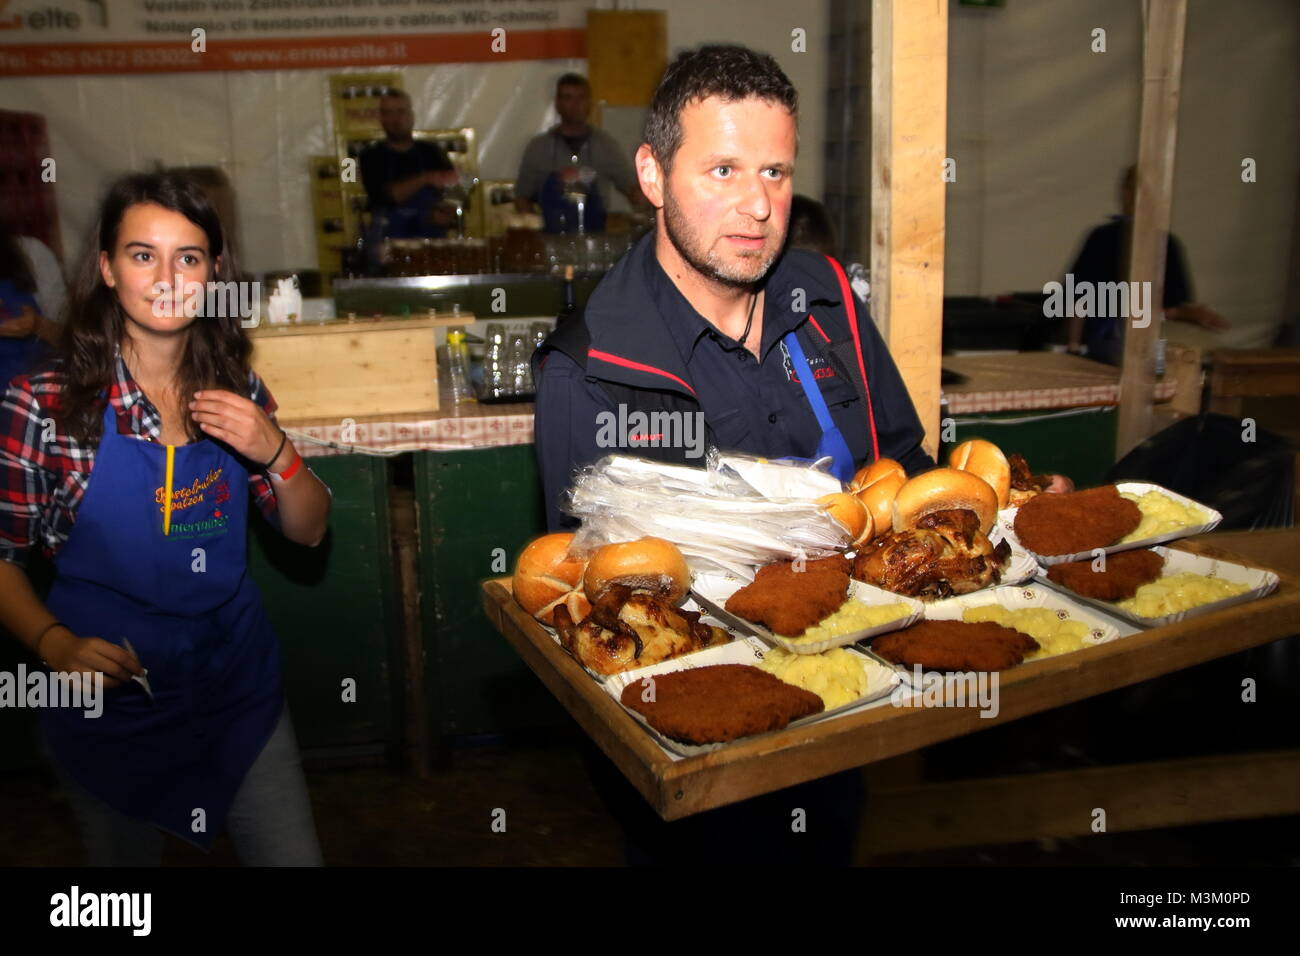 Nachschub für den großen Hunger, ein Helfer serviert Schnitzel beim Kastelruther Spatzenfest 2016 Stock Photo